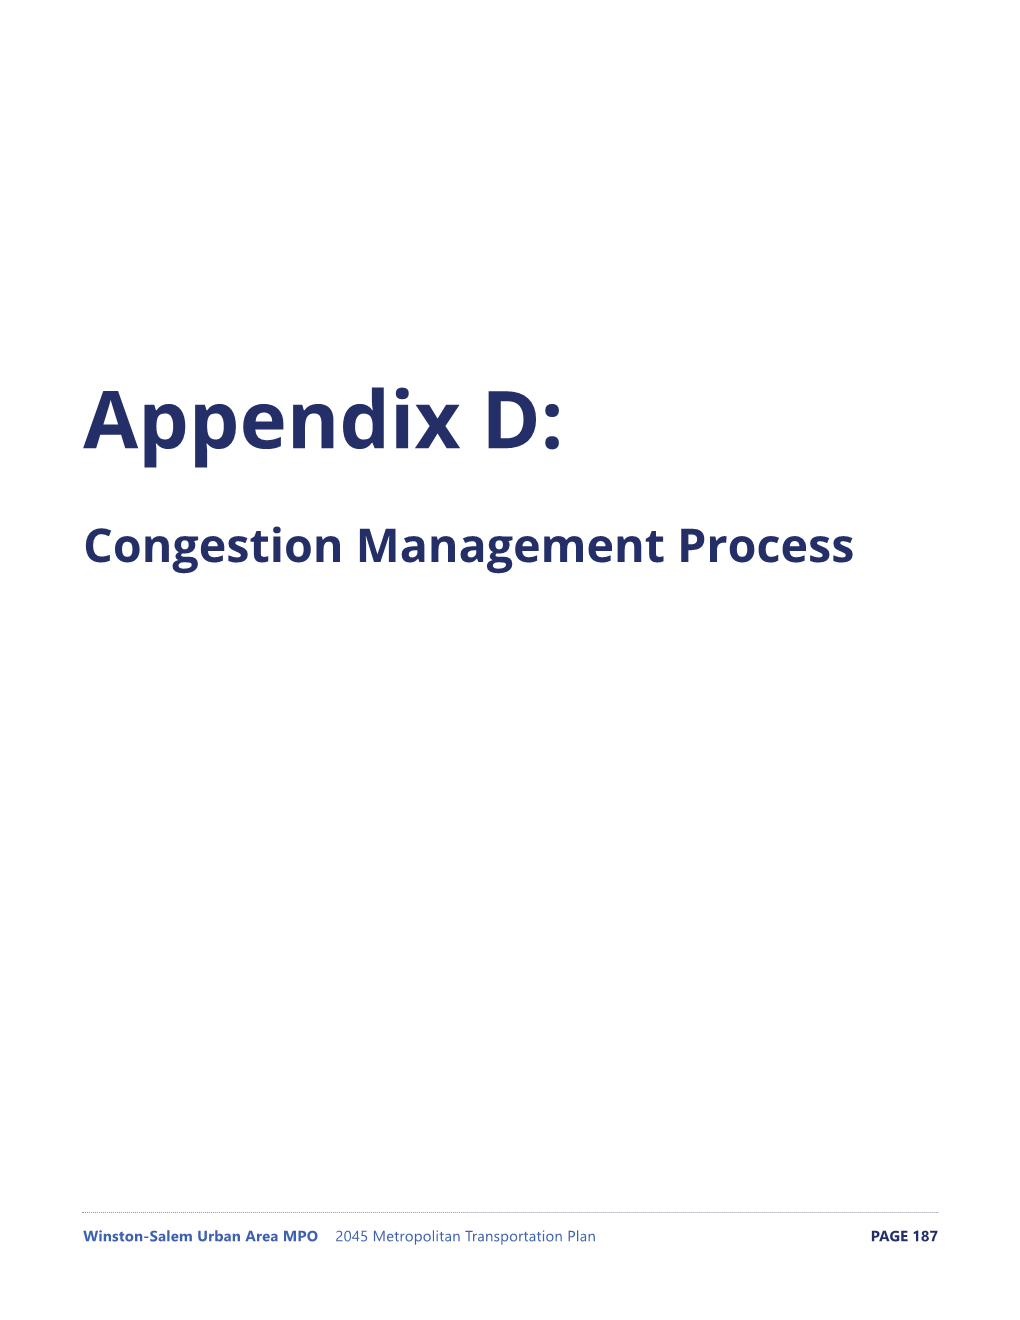 Appendix D: Congestion Management Process